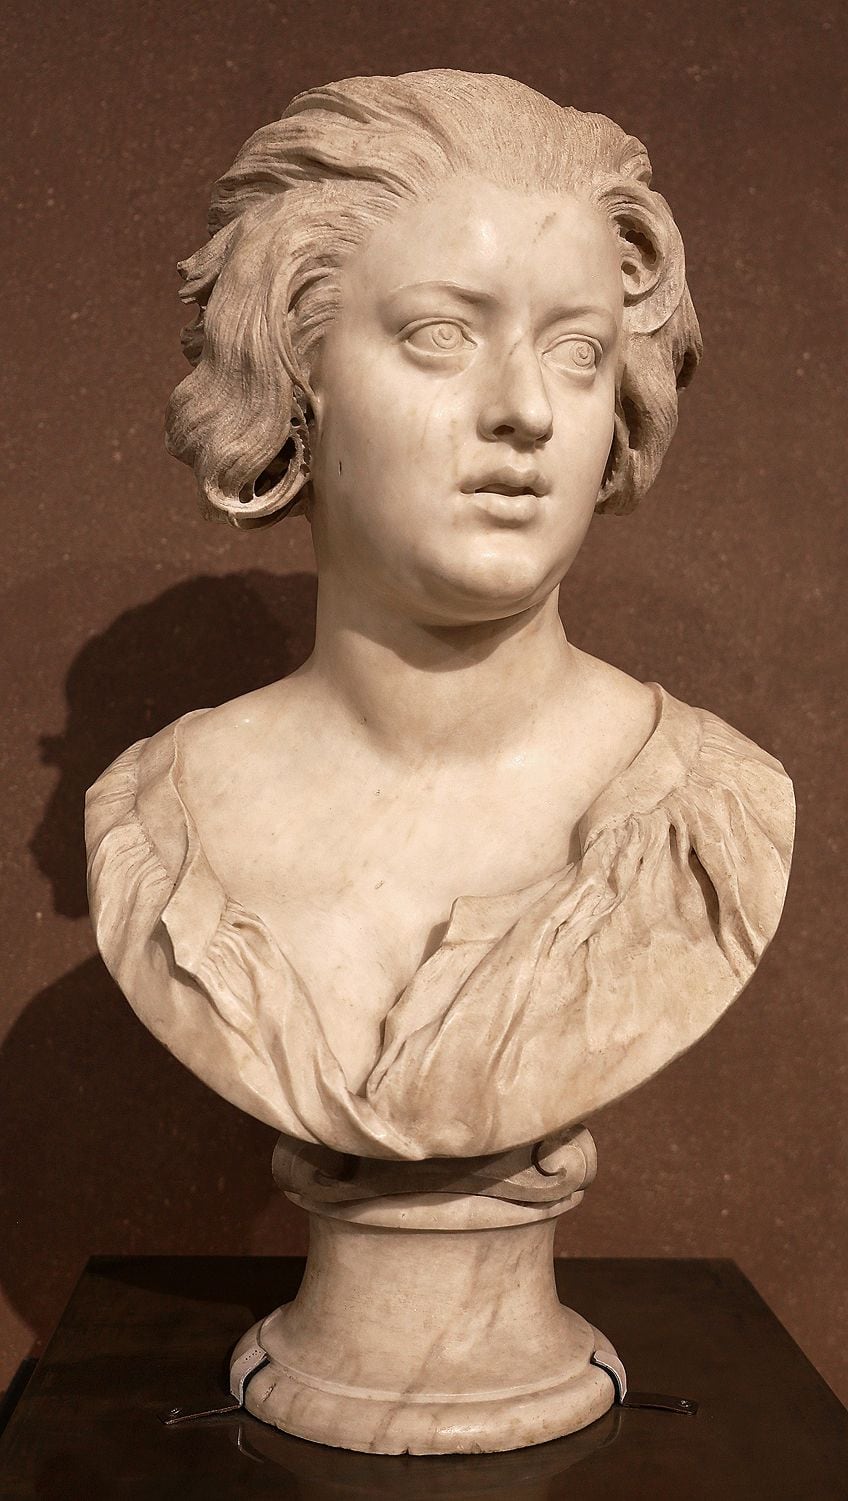 Arte del escultor Bernini